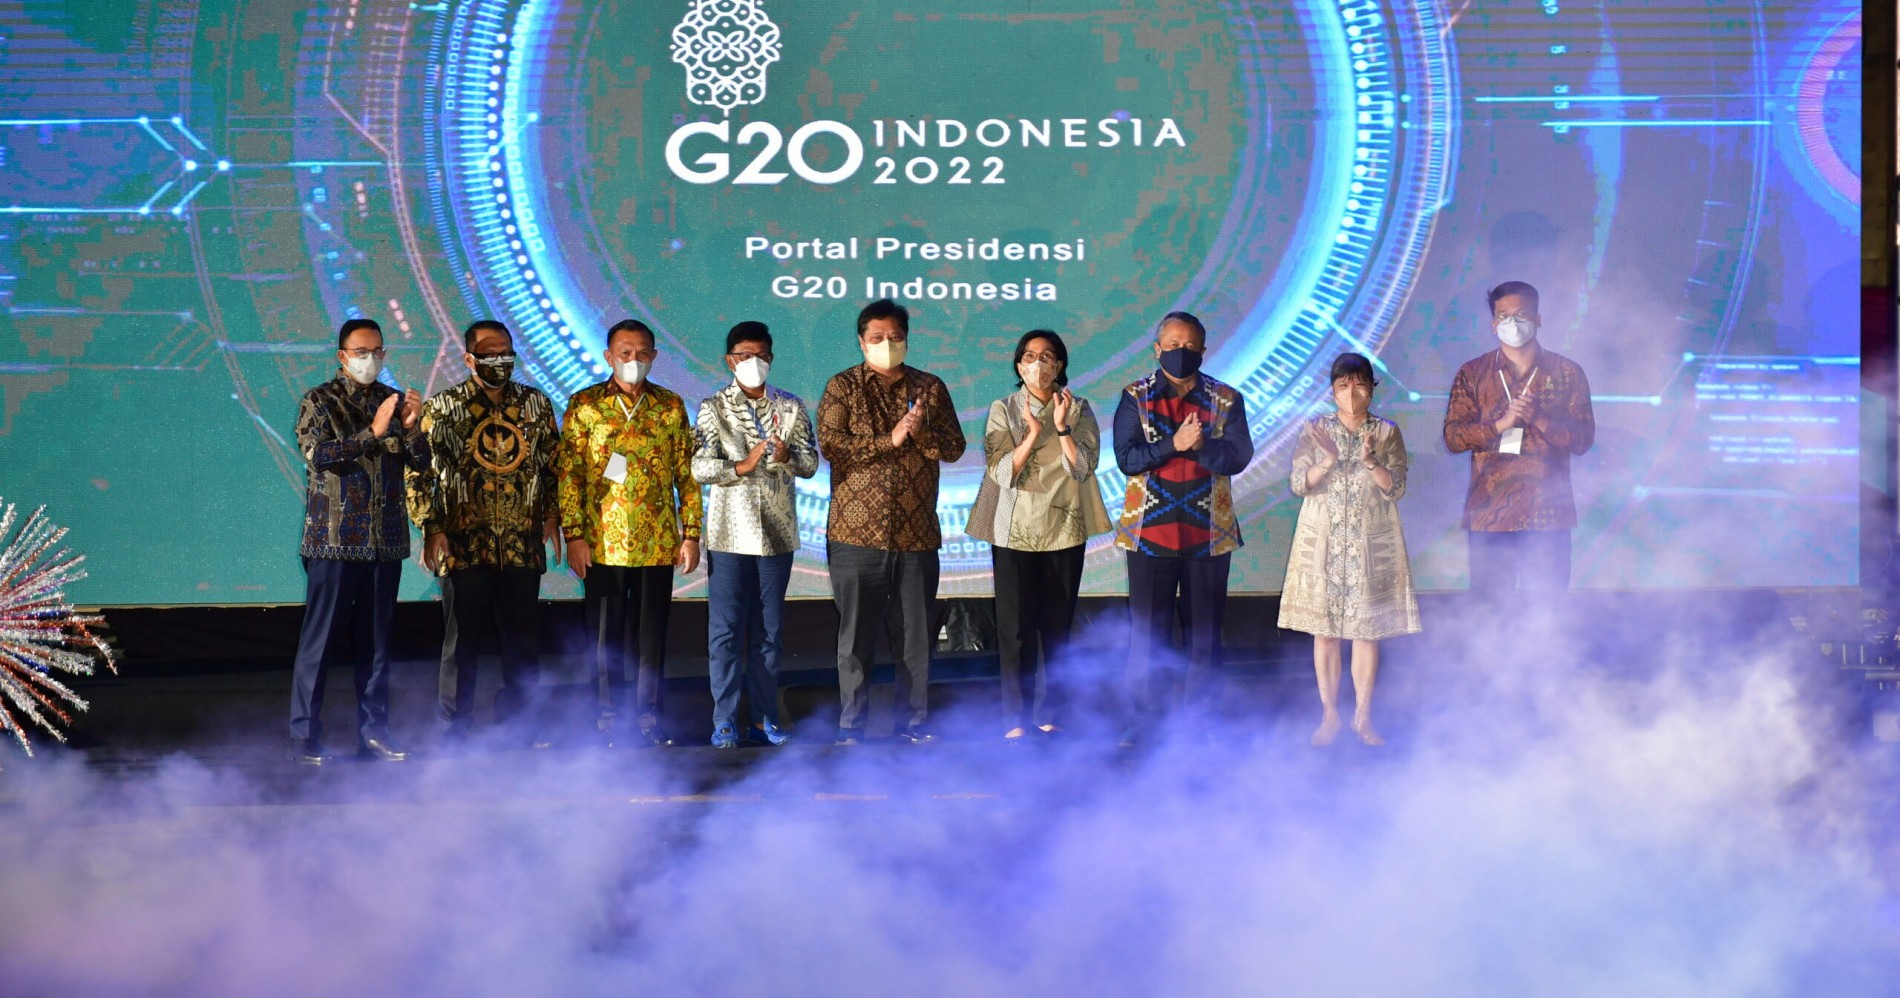 Pembukaan G20 di Indonesia. (Sumber: g20.org)